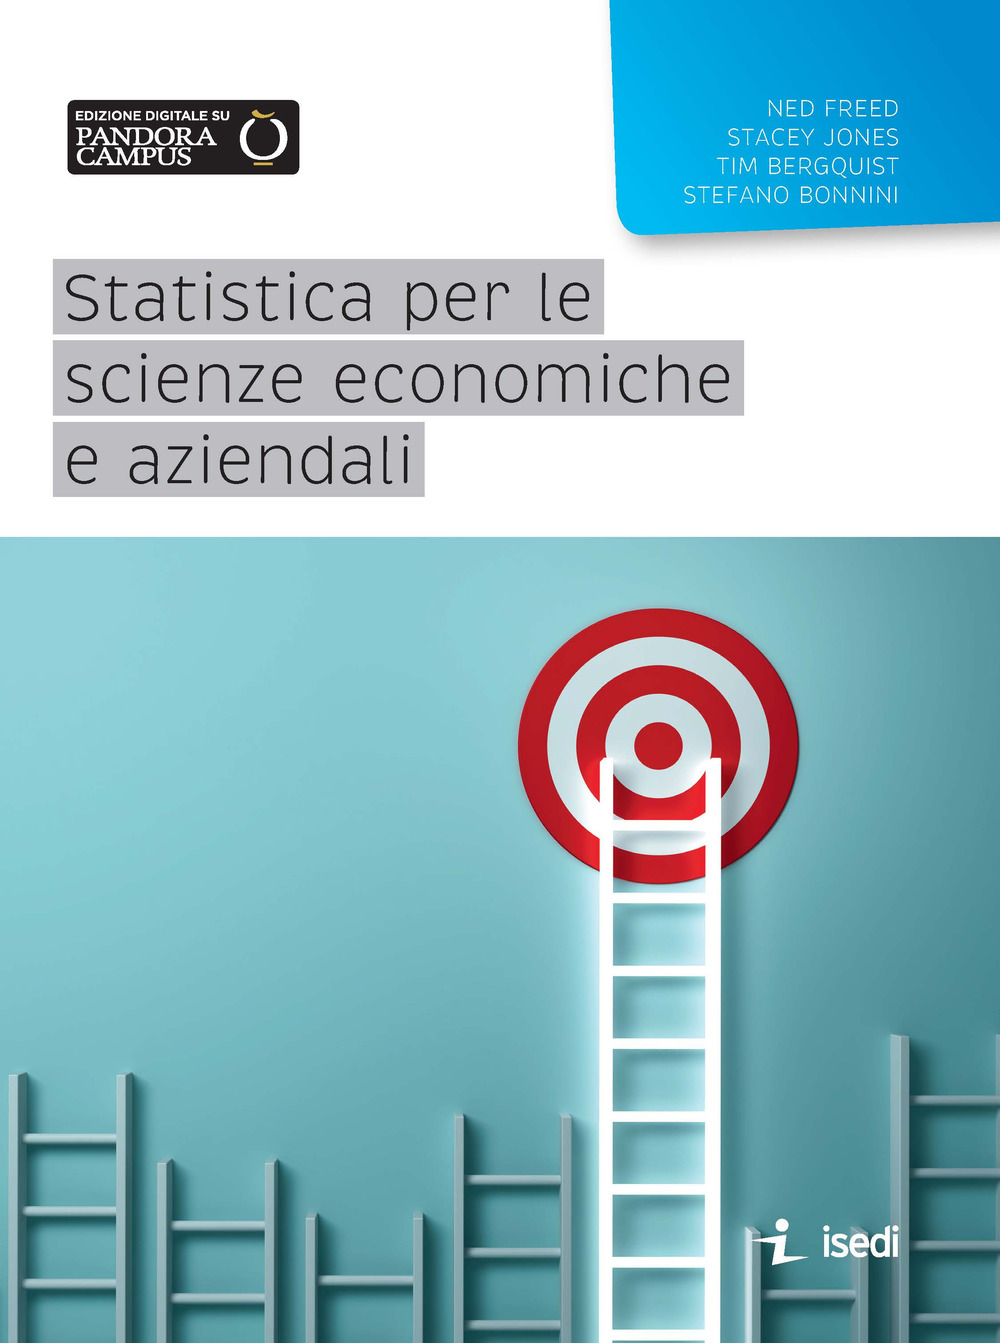 Image of Statistica per le scienze economiche e aziendali